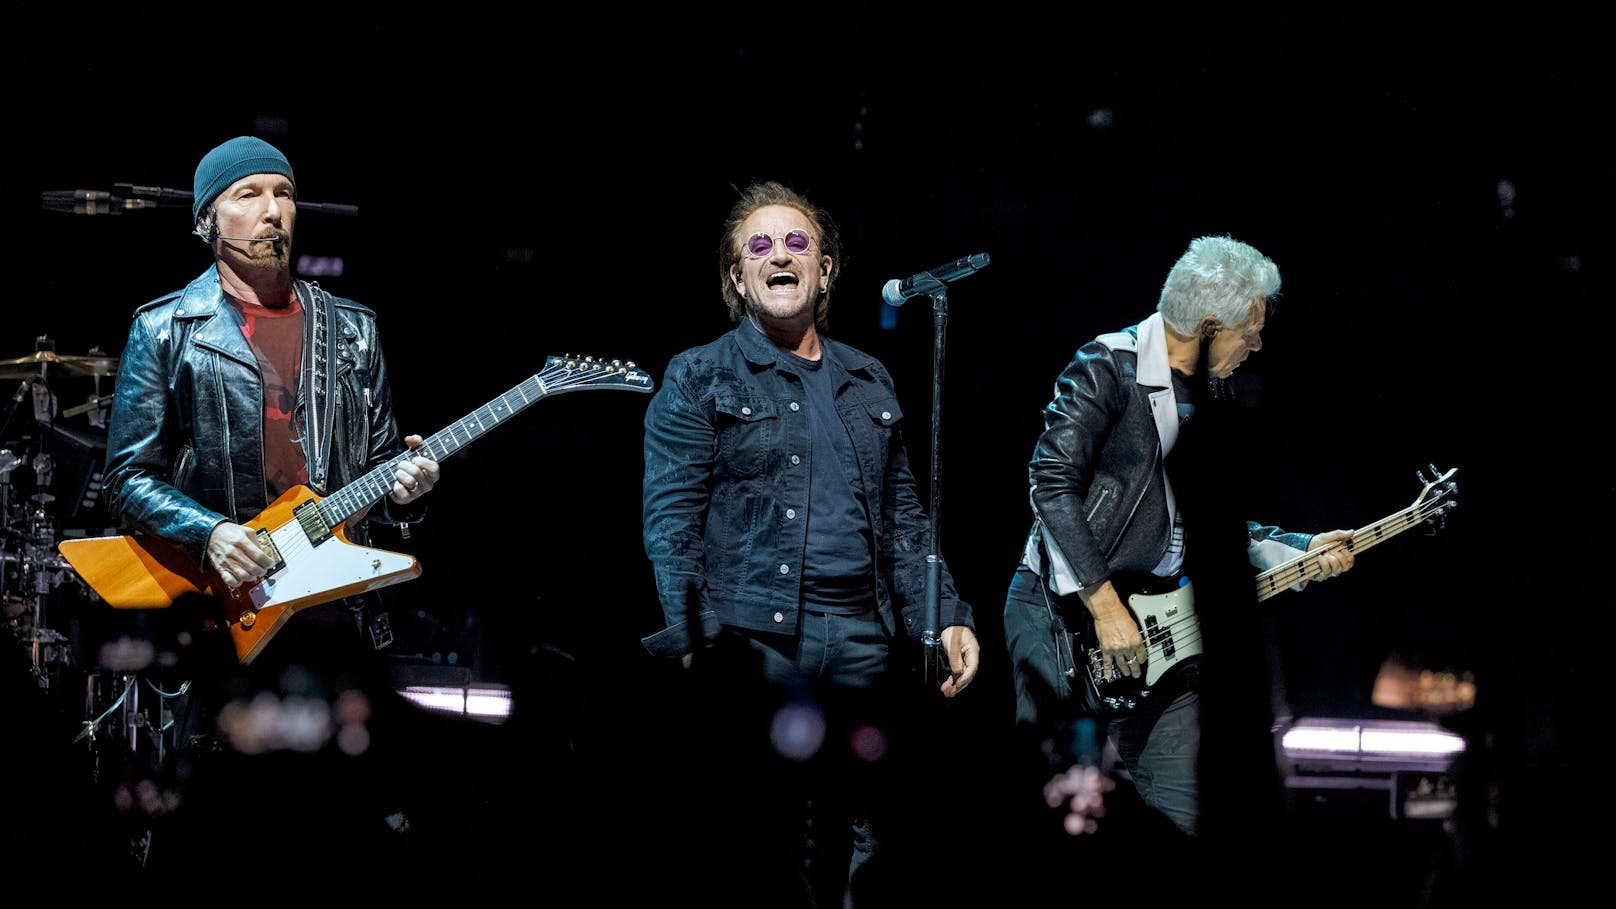 Die Band "U2" wird ebenfalls dabei sein.